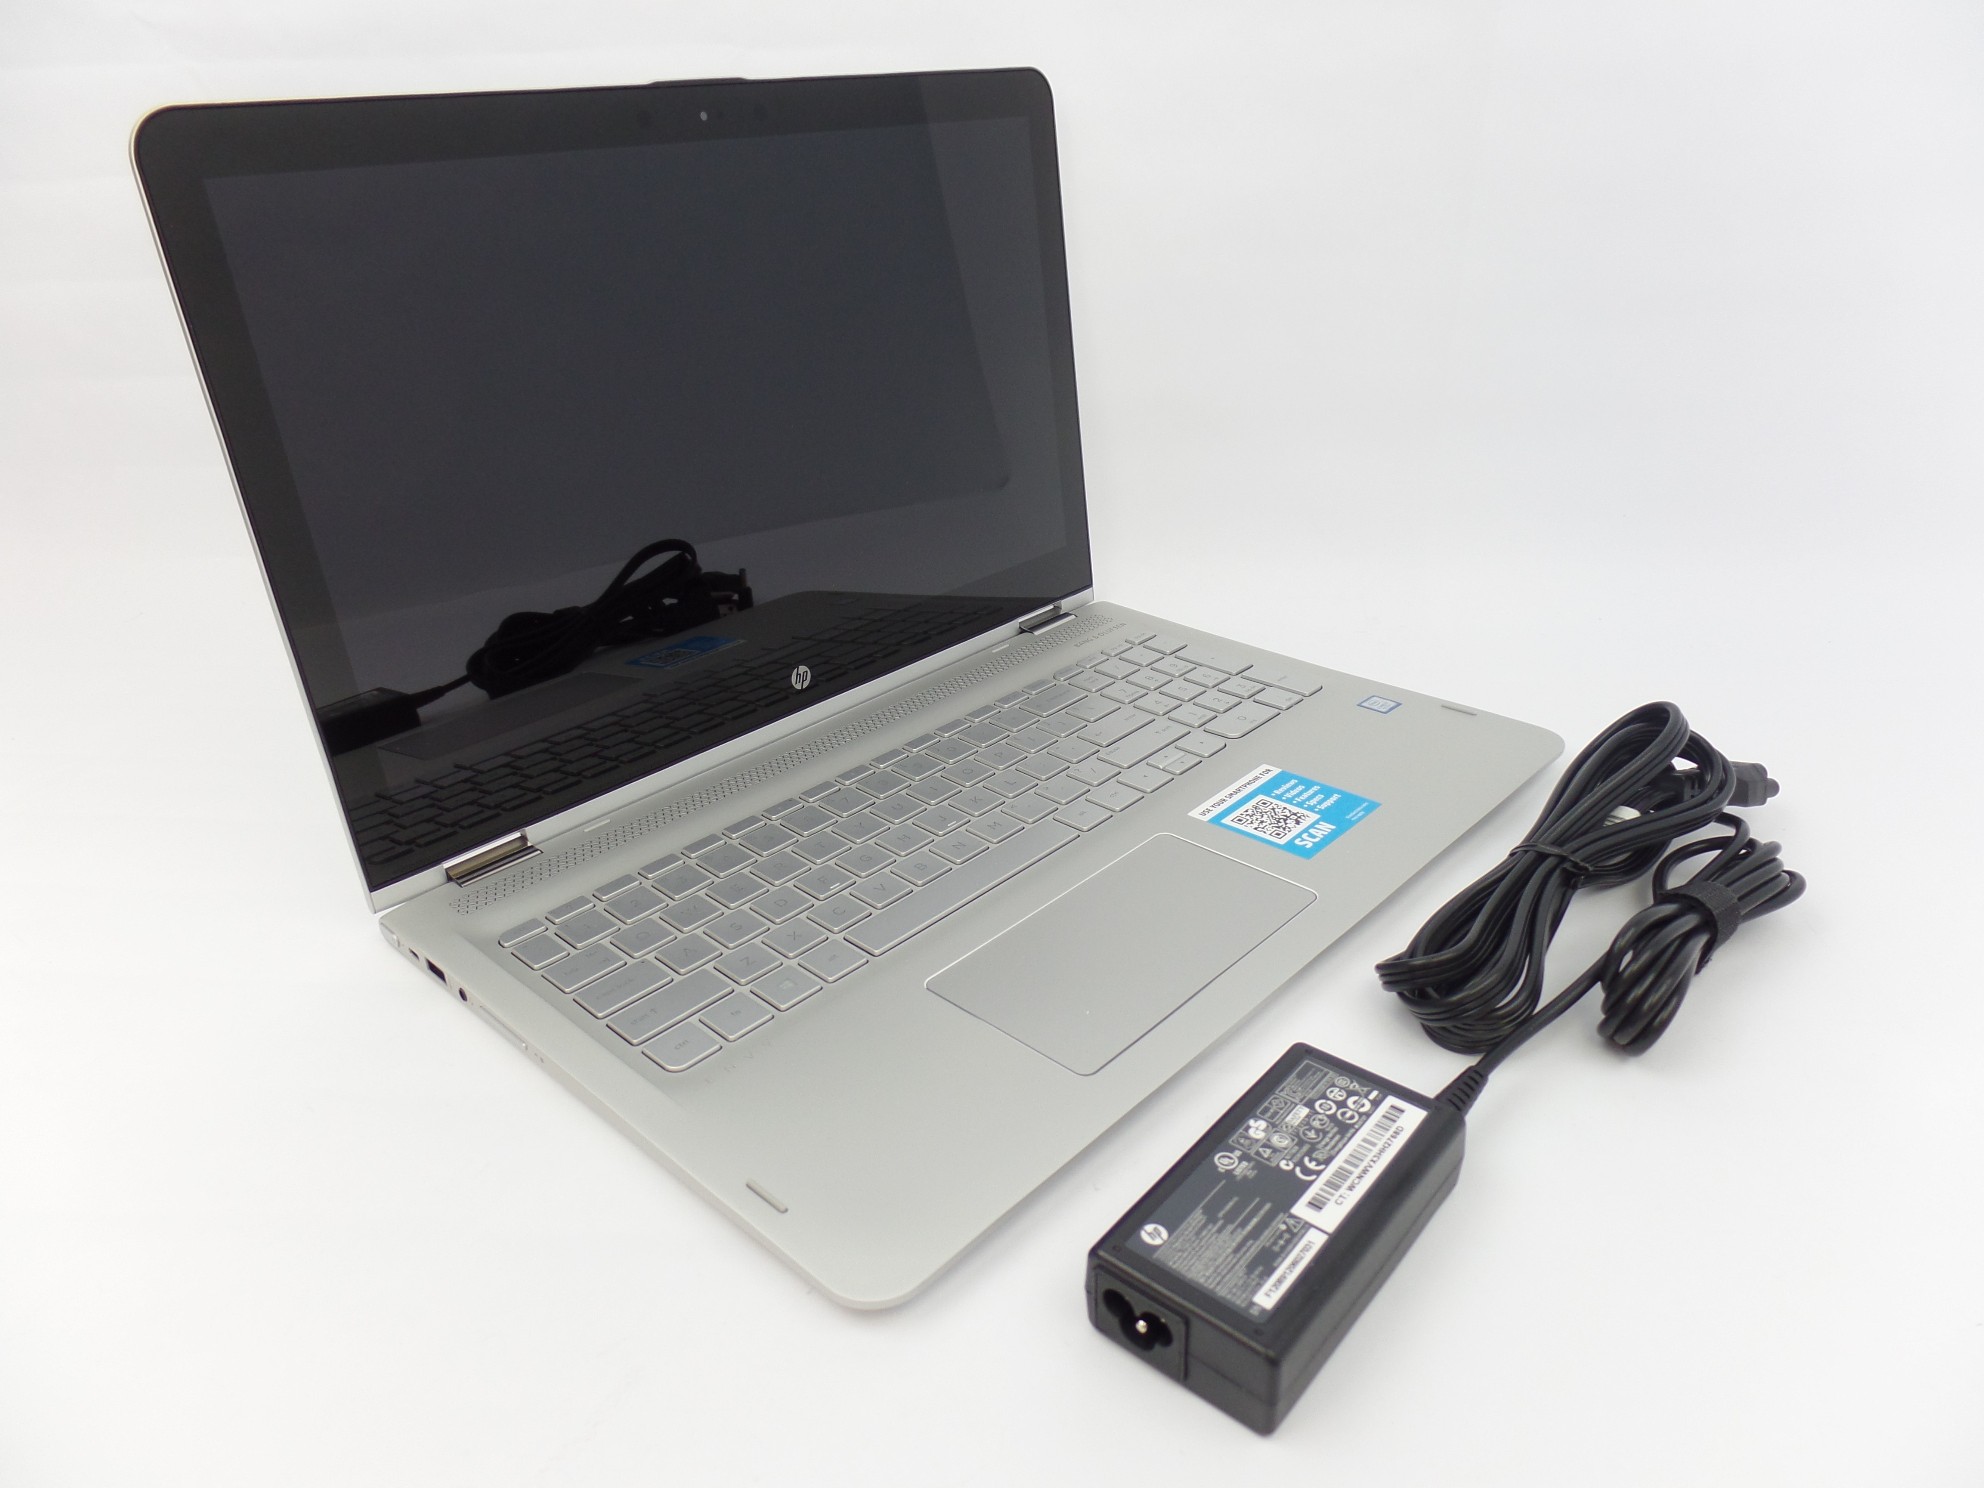 HP ENVY x360 m6-aq105dx 15.6" FHD Touch i7-7500U 16GB 1TB W10H Laptop W2K44UA U1